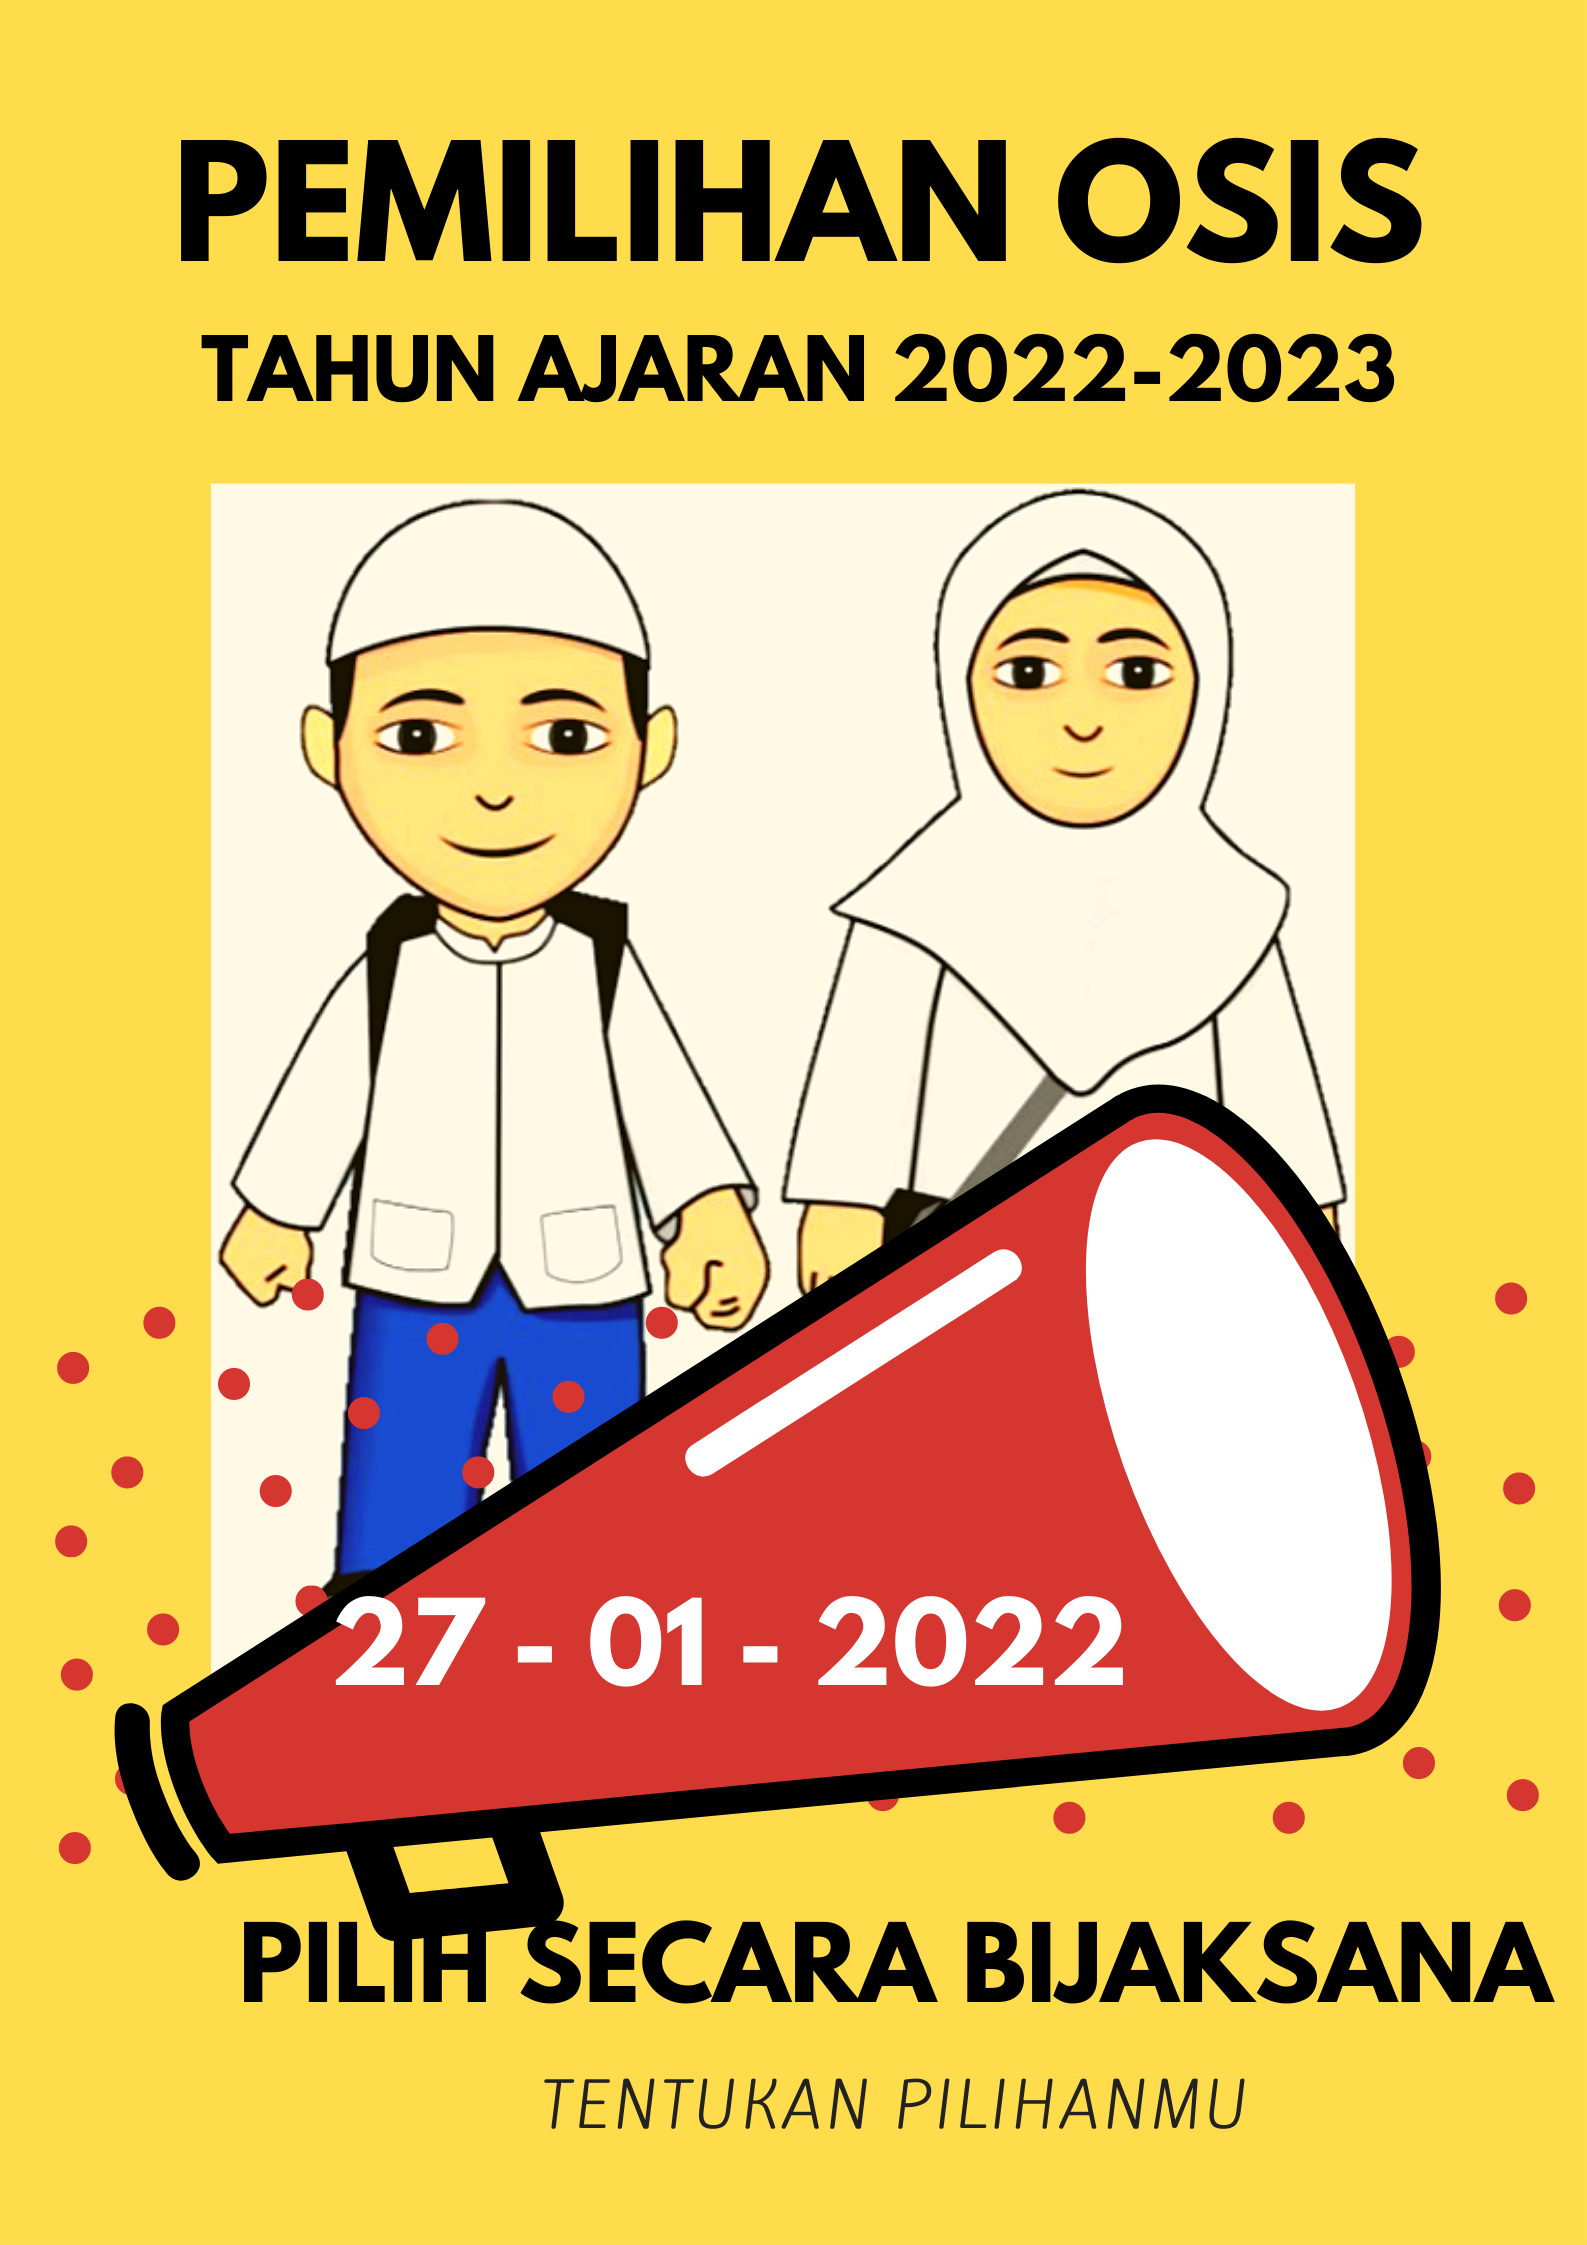 PEMILIHAN PENGURUS OSIS 2022/2023